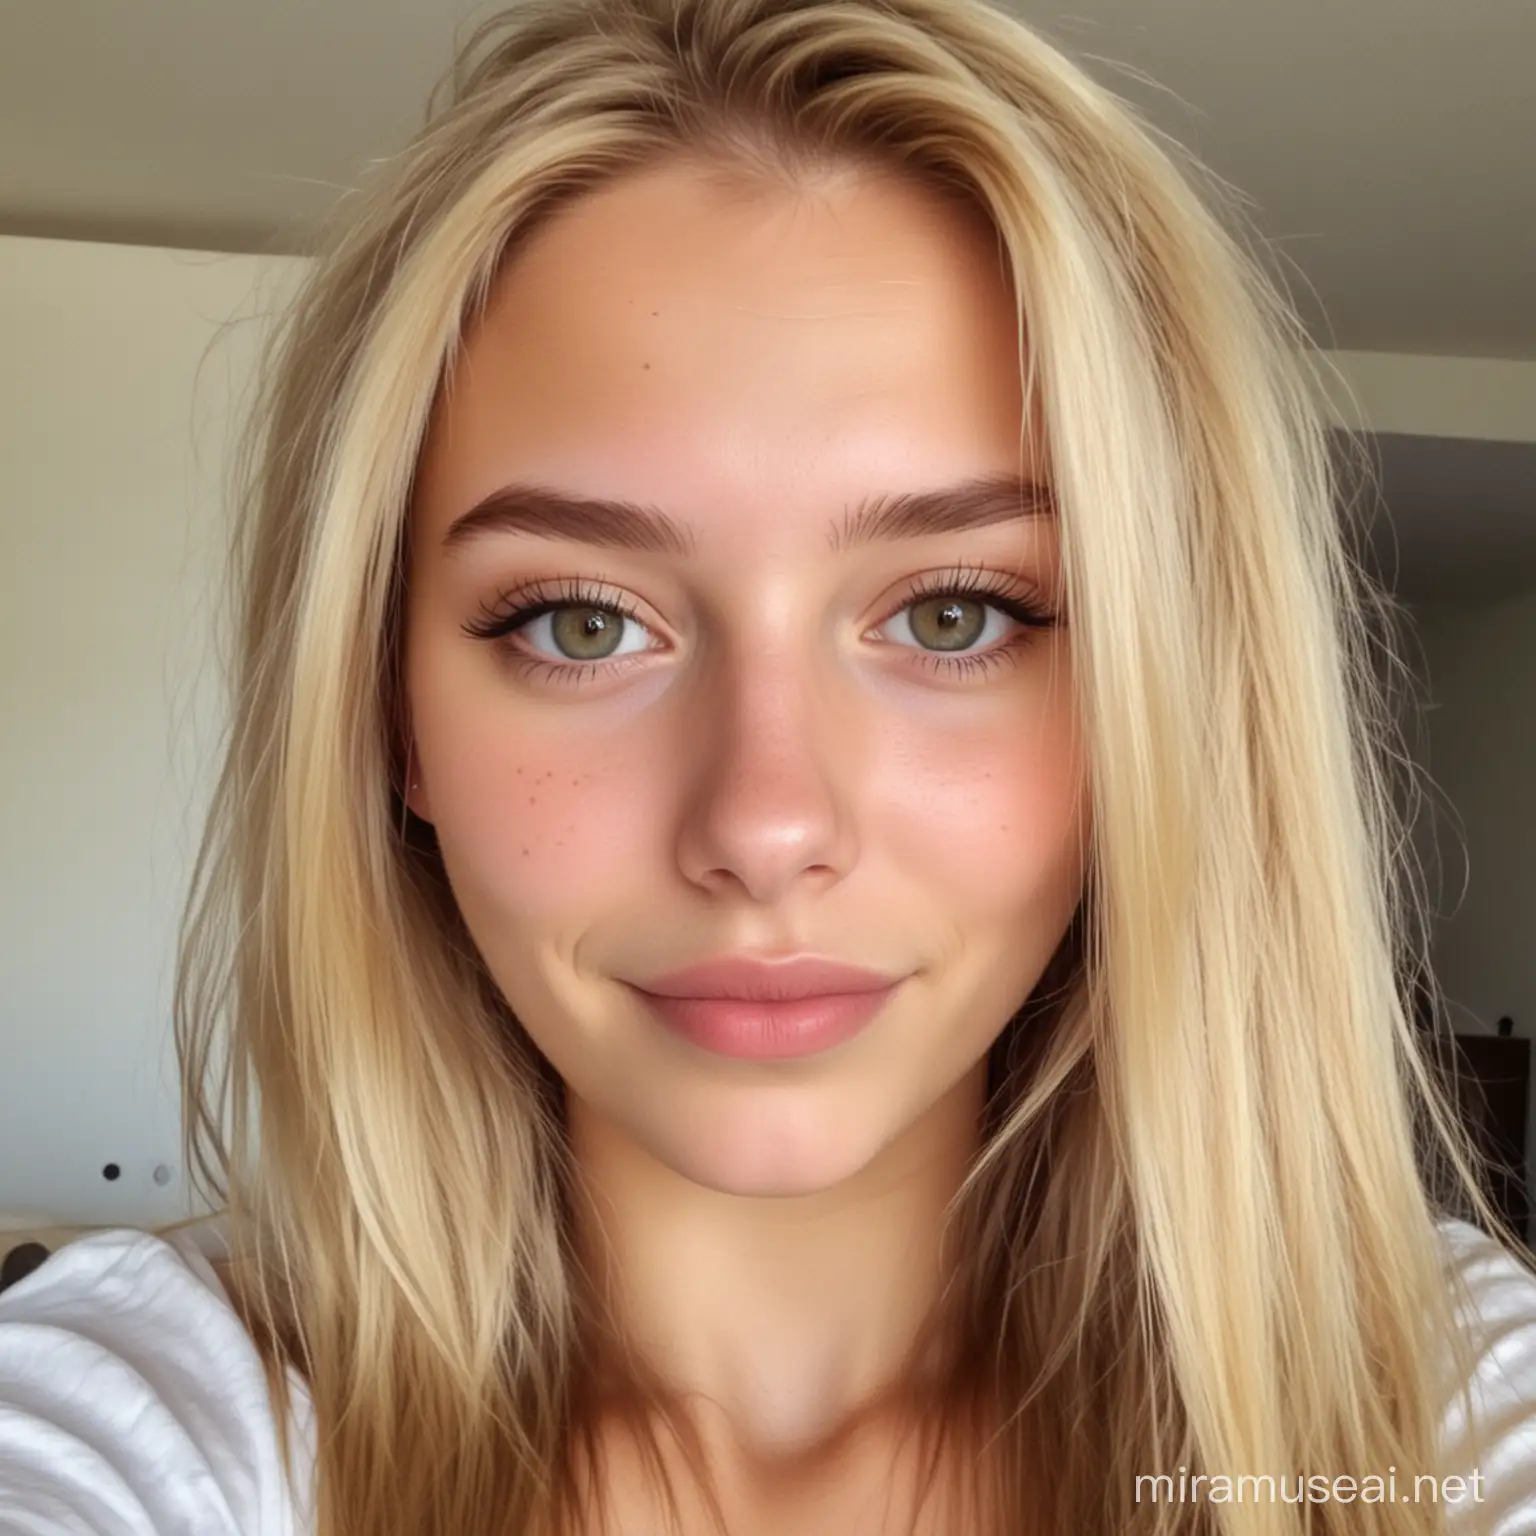 Blonde 20YearOld Girl Taking Selfie Portrait